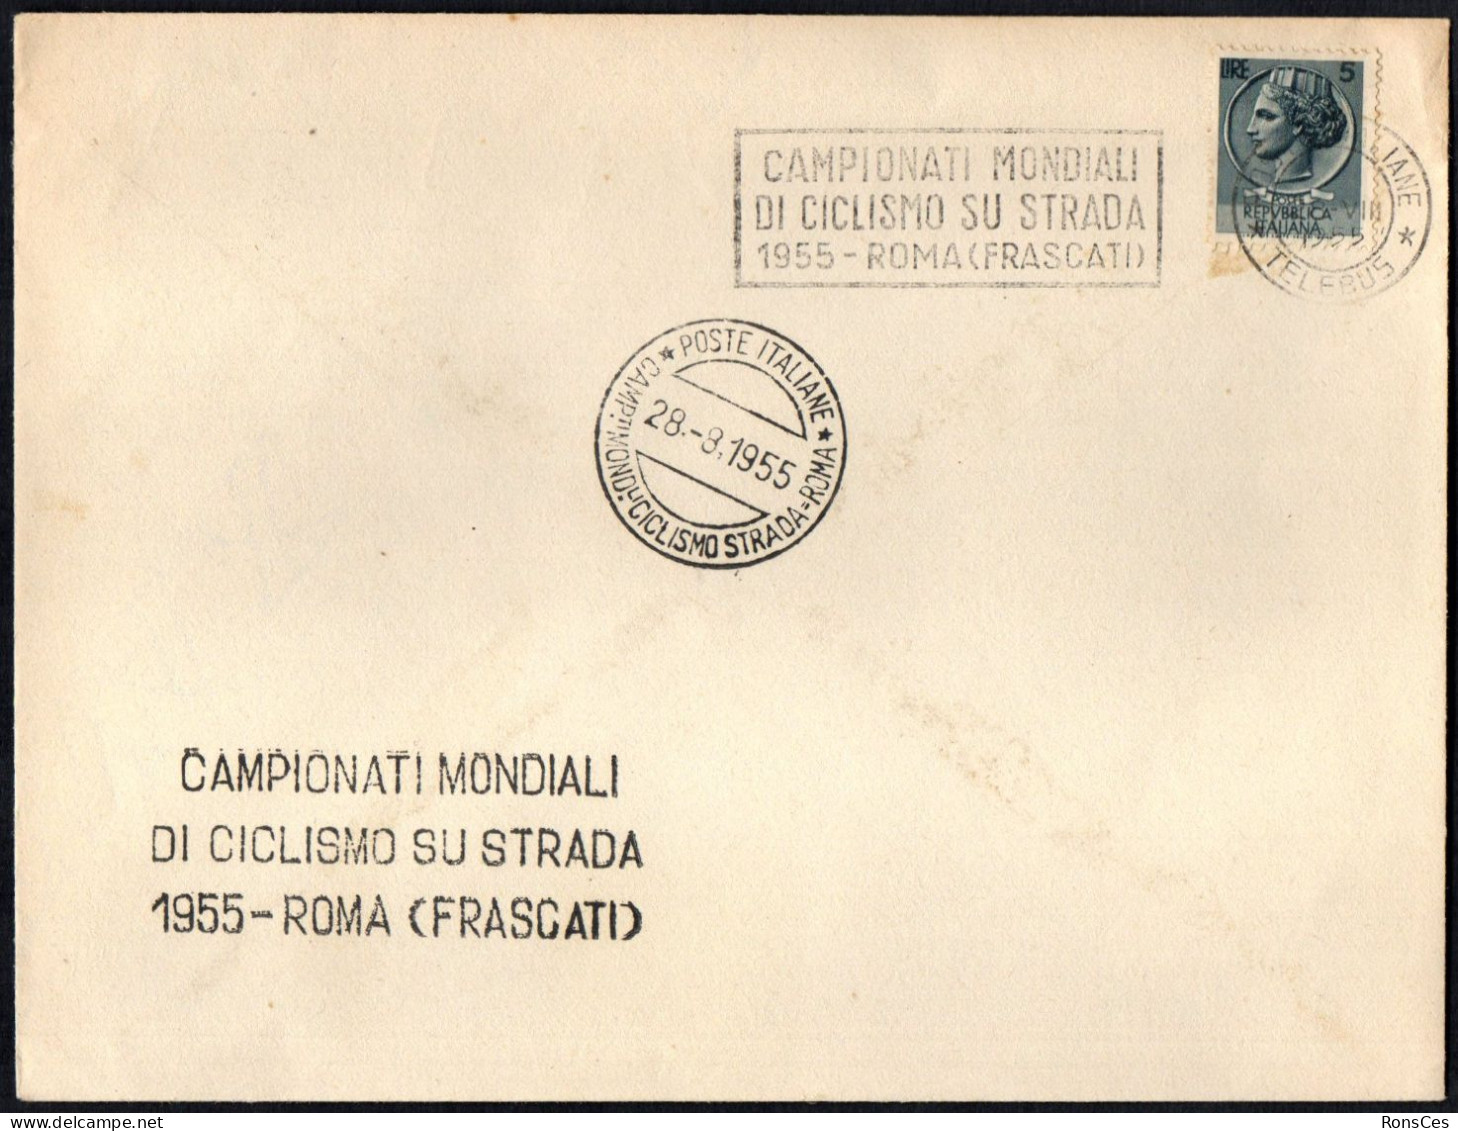 CYCLING - ITALIA ROMA 1955 - CAMPIONATI MONDIALI DI CICLISMO SU STRADA (FRASCATI) - A - Radsport